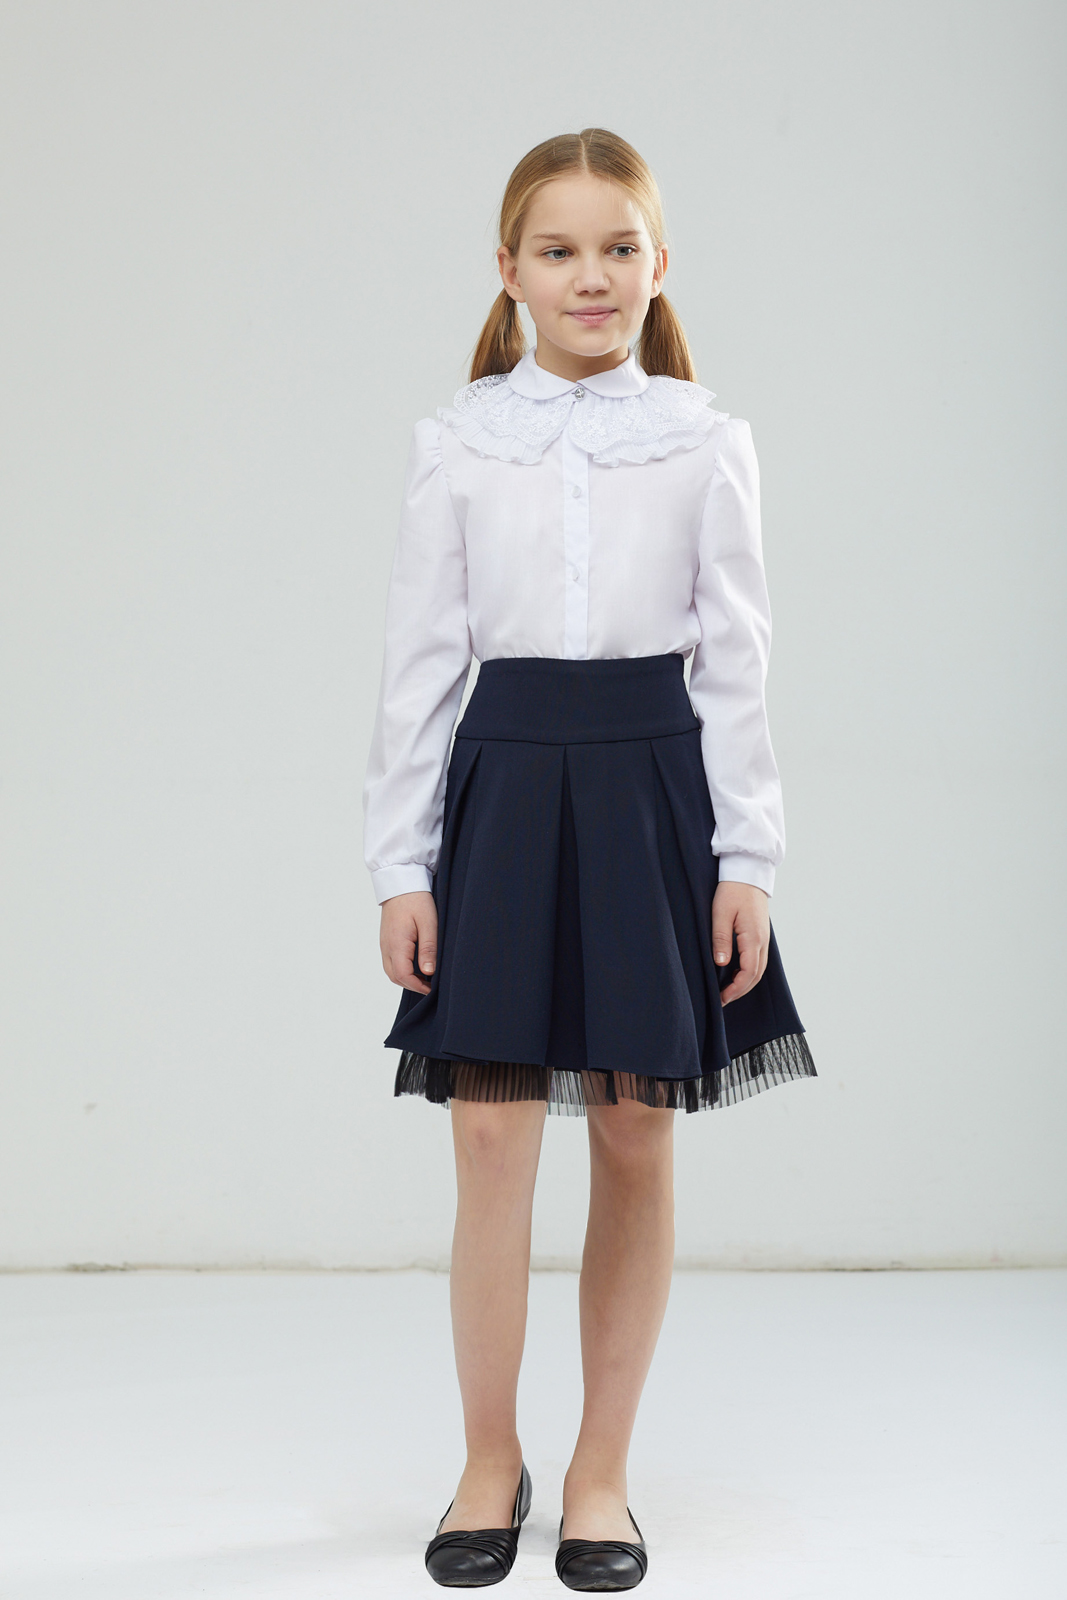 Блузка для девочки Смена, цвет: белый. 17с121. Размер 158-80